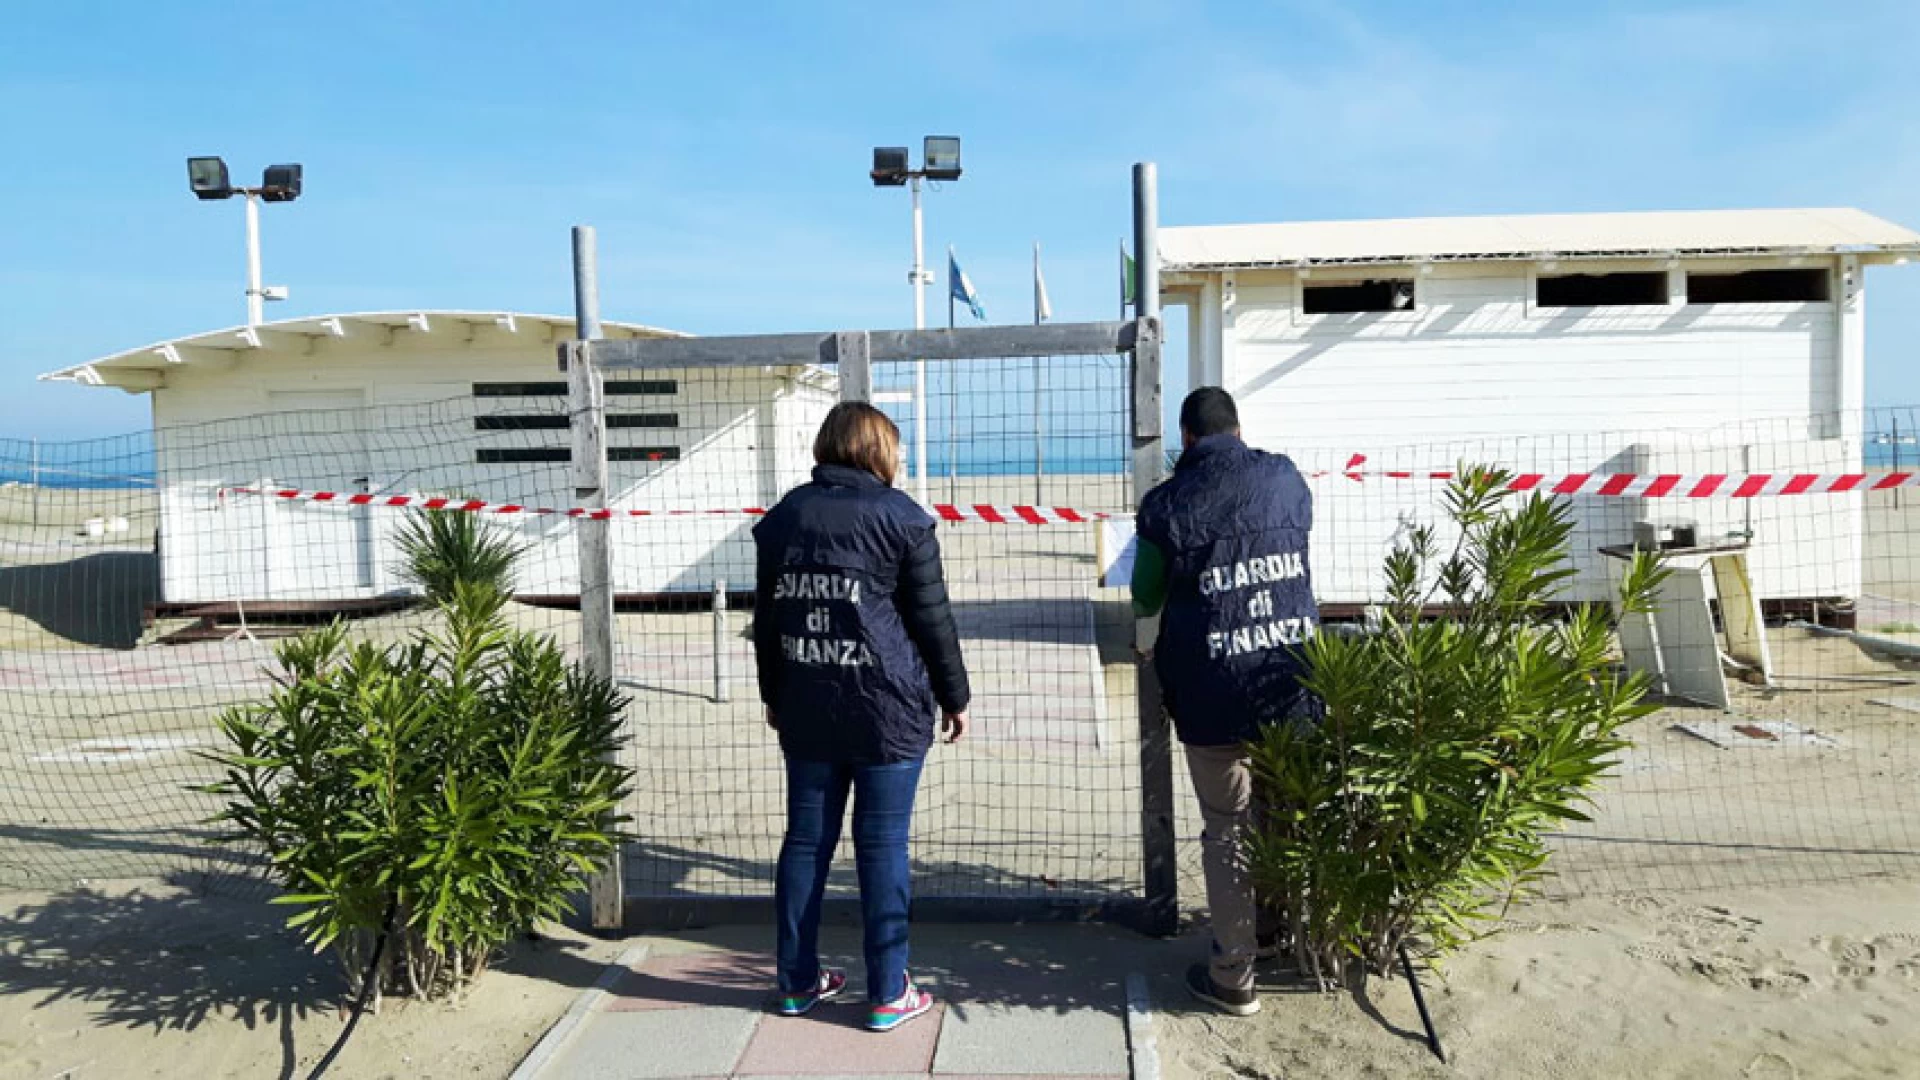 Termoli: la Guardia di Finanza arresta cittadino italiano con un chilo di droga e 400mila euro in contanti.